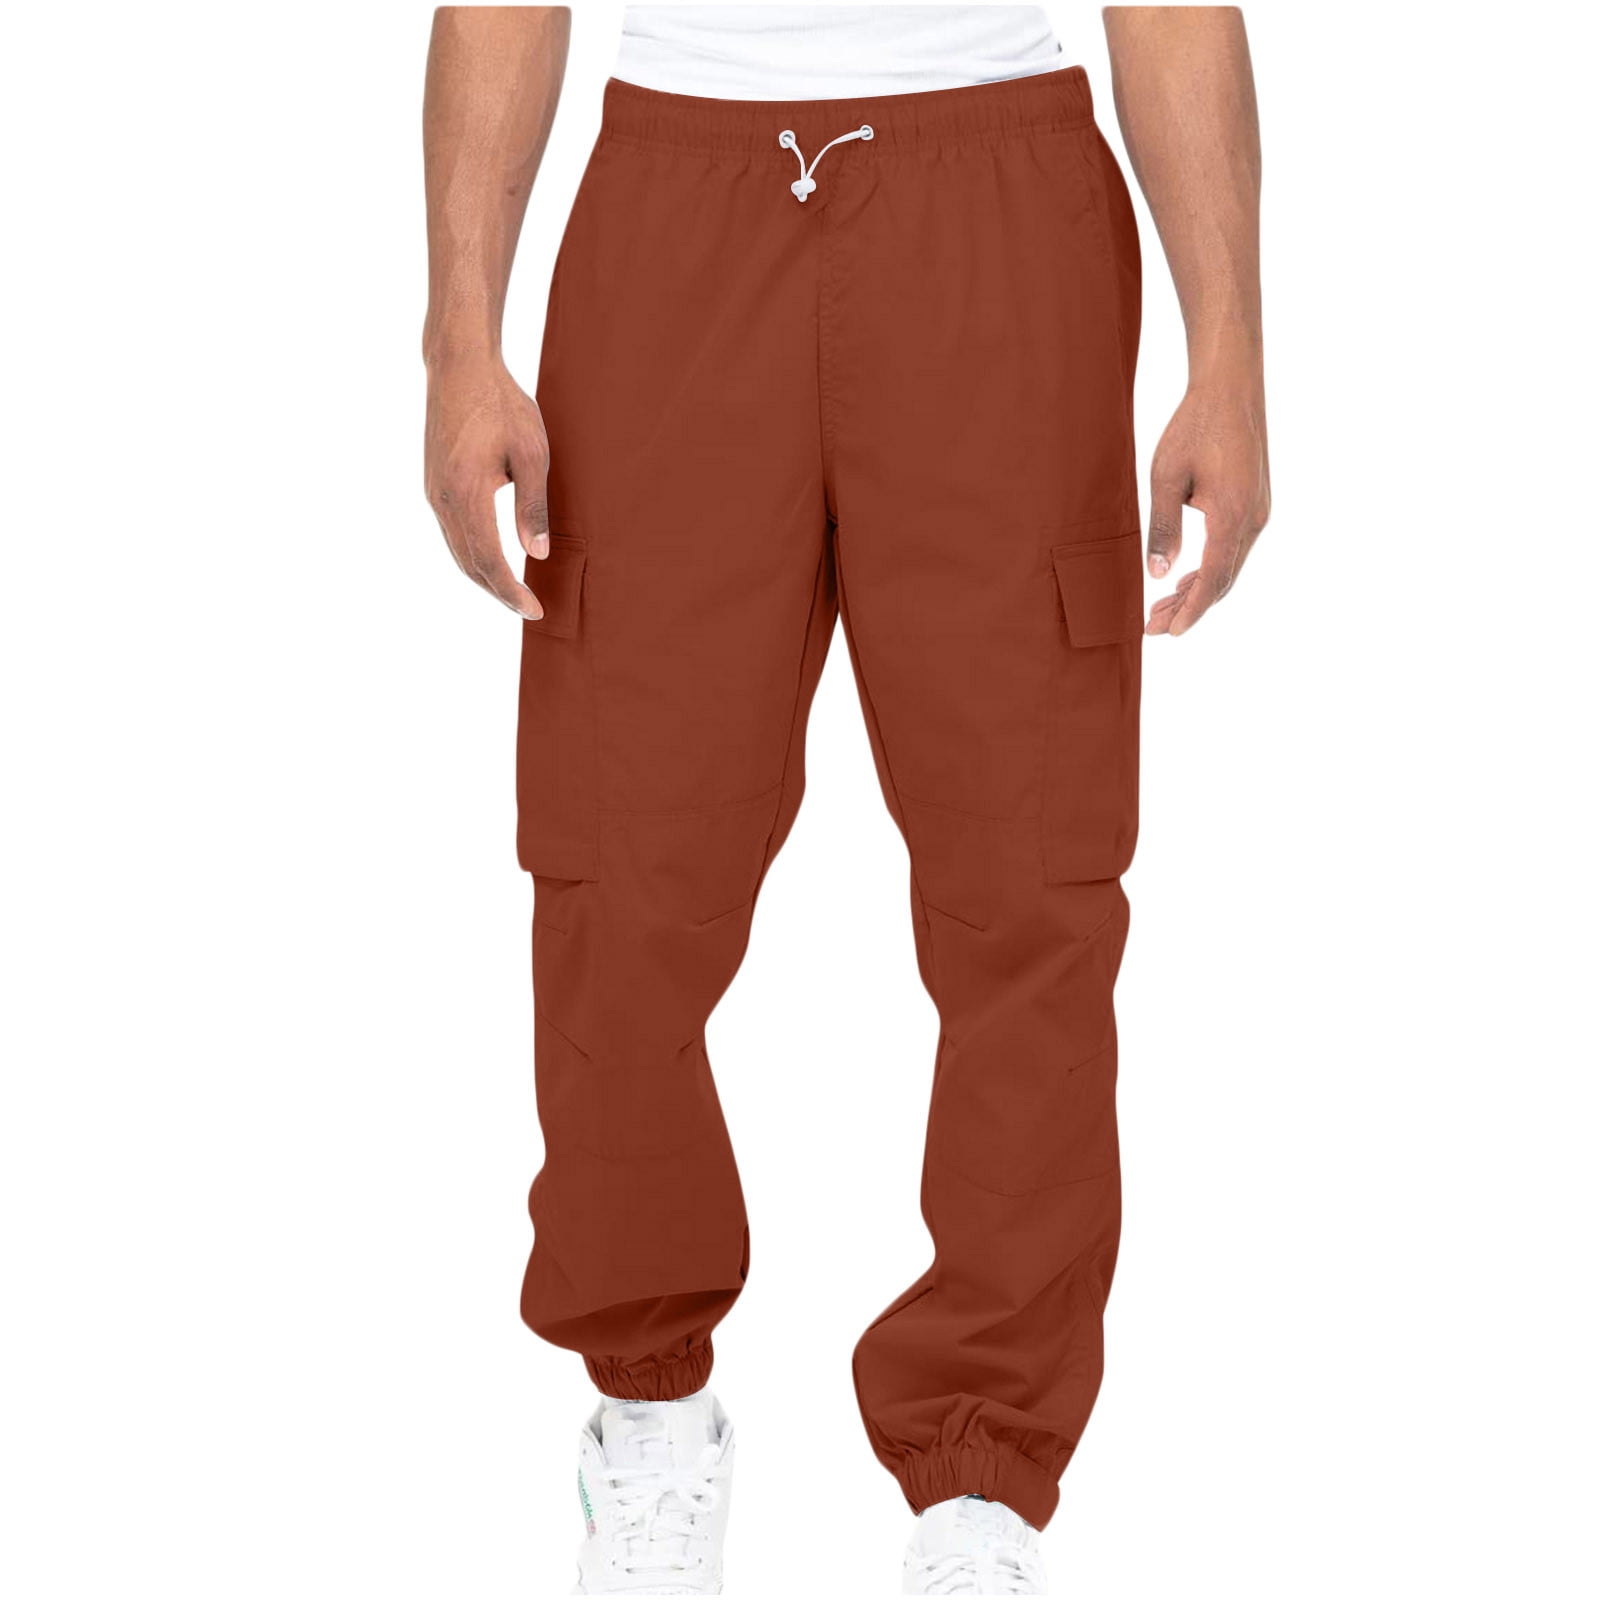 Ernkv Cargo Pants for Men Elastic Waist Solid Color Comfy Lounge